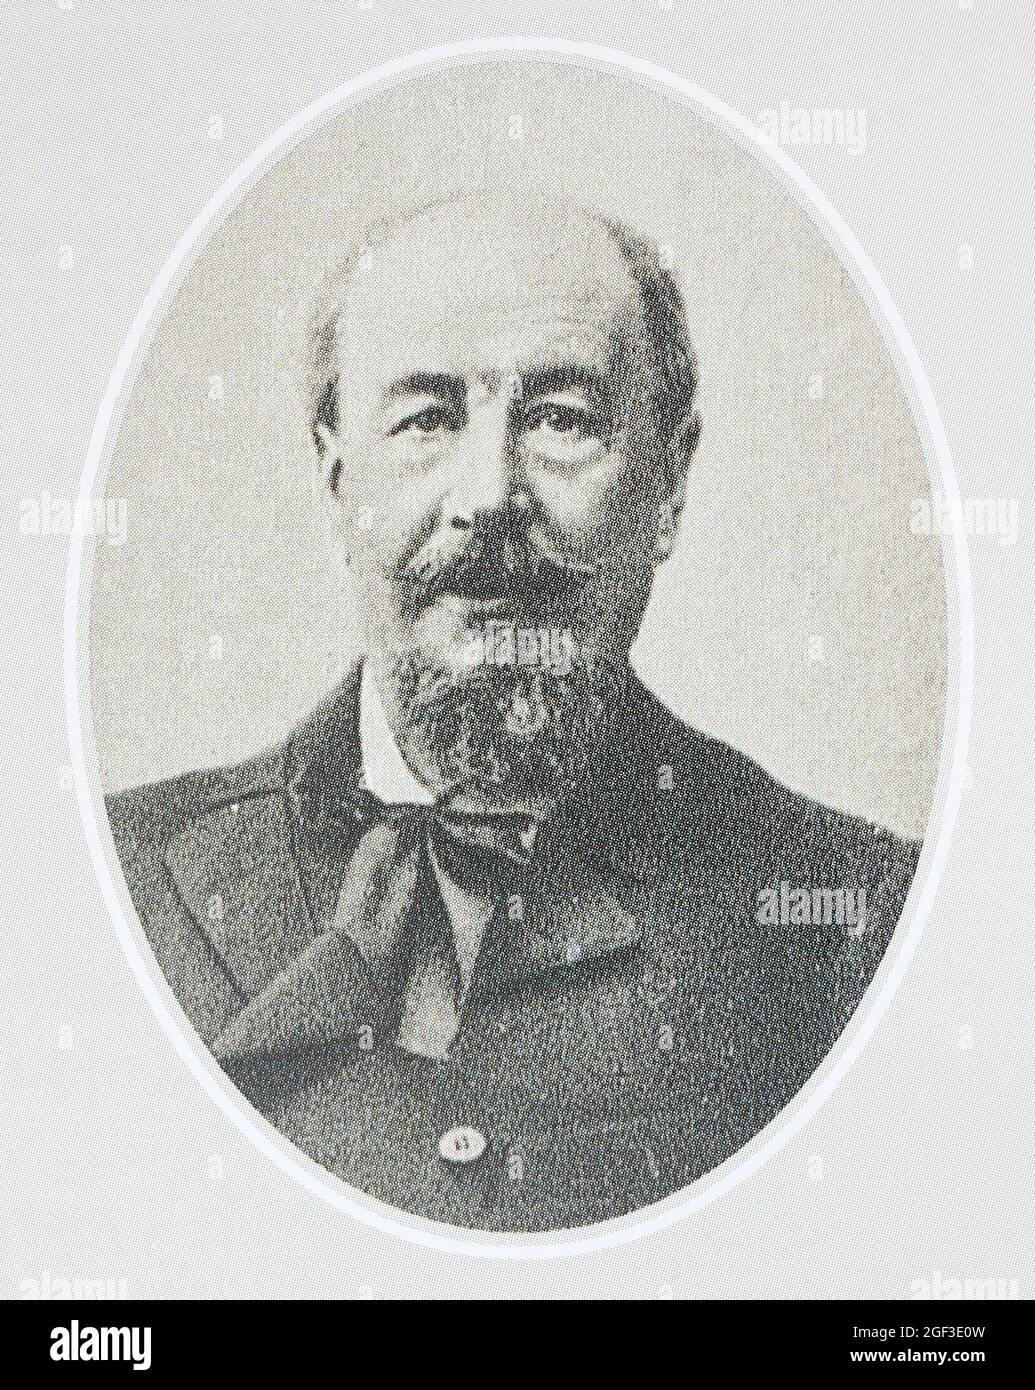 Porträt des Akademikers Vladimir Sizov. Wladimir Iljitsch Sizov (1840-1904) - russischer Archäologe und Kunstkritiker. Stockfoto